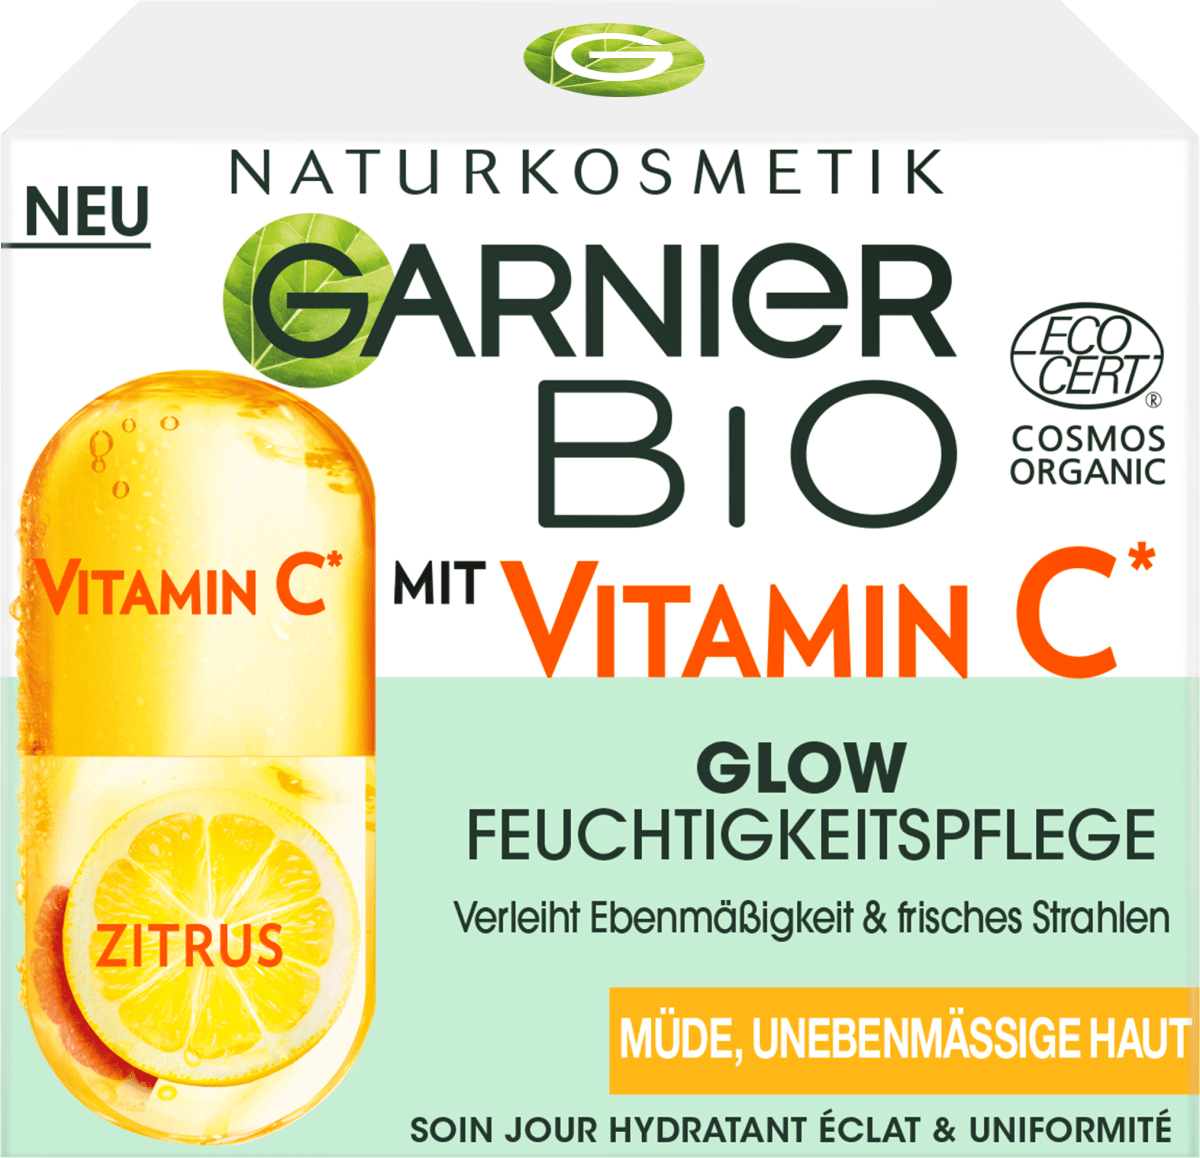 GARNIER BIO Vitamin C Glow Feuchtigkeitspflege, 50 ml